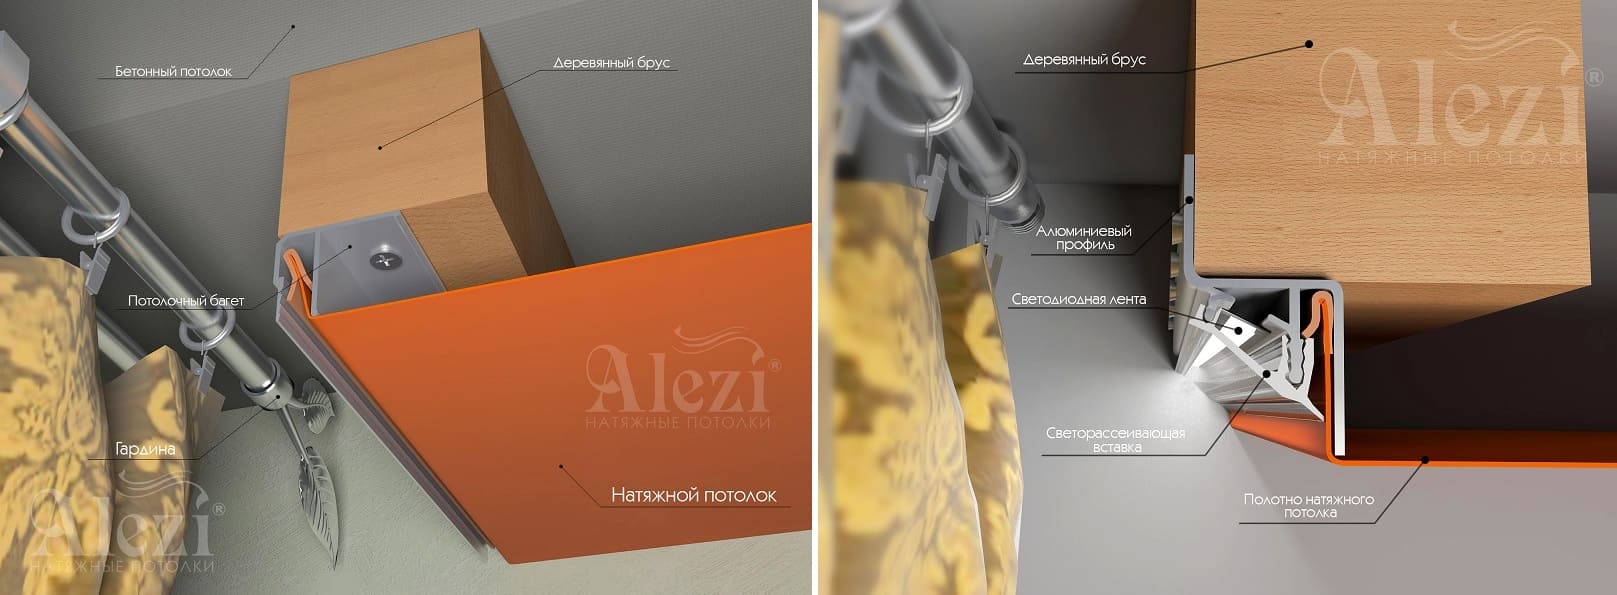 Технологии установки натяжного потолка: обзор экспертов компании Alezi